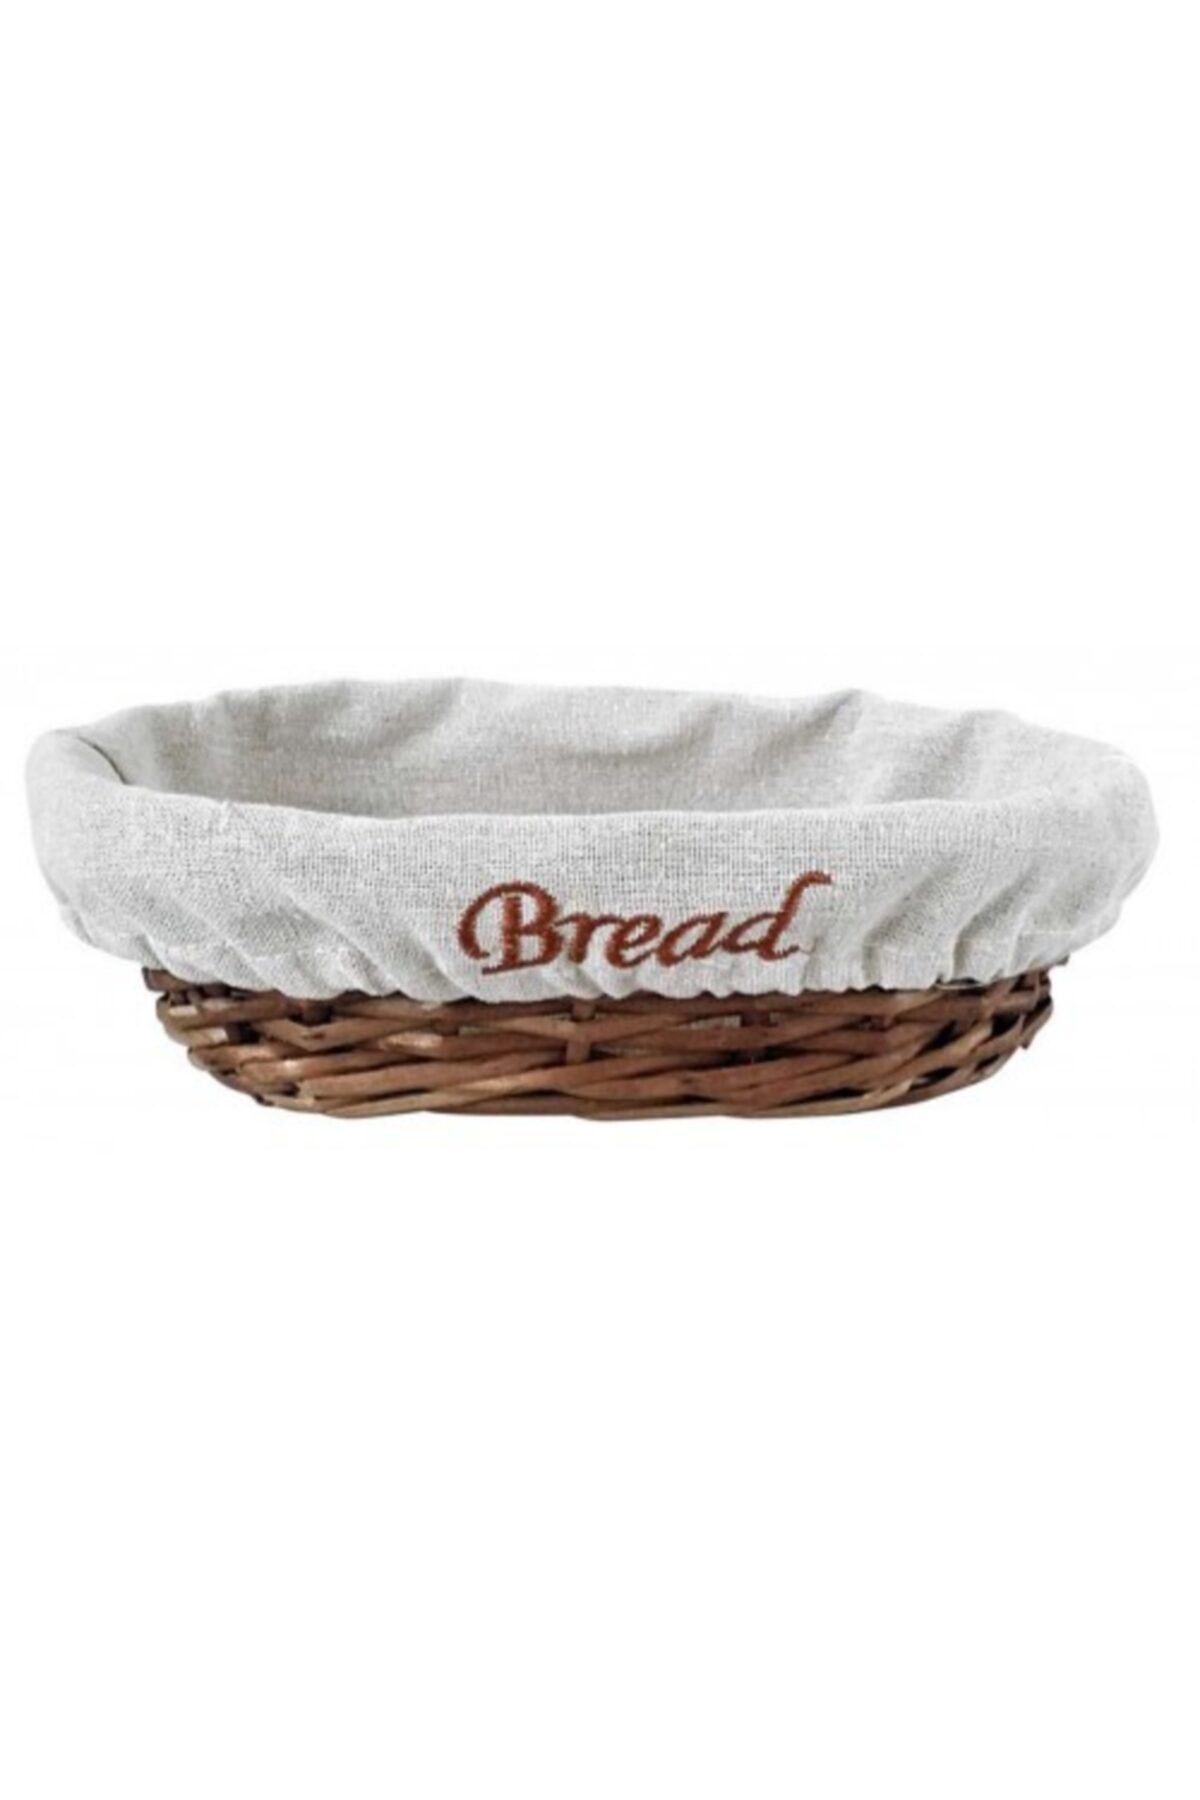 Genel Markalar Groovy Ekmek Sepetı Hasır Bezlı Oval 24*17*7 Cm